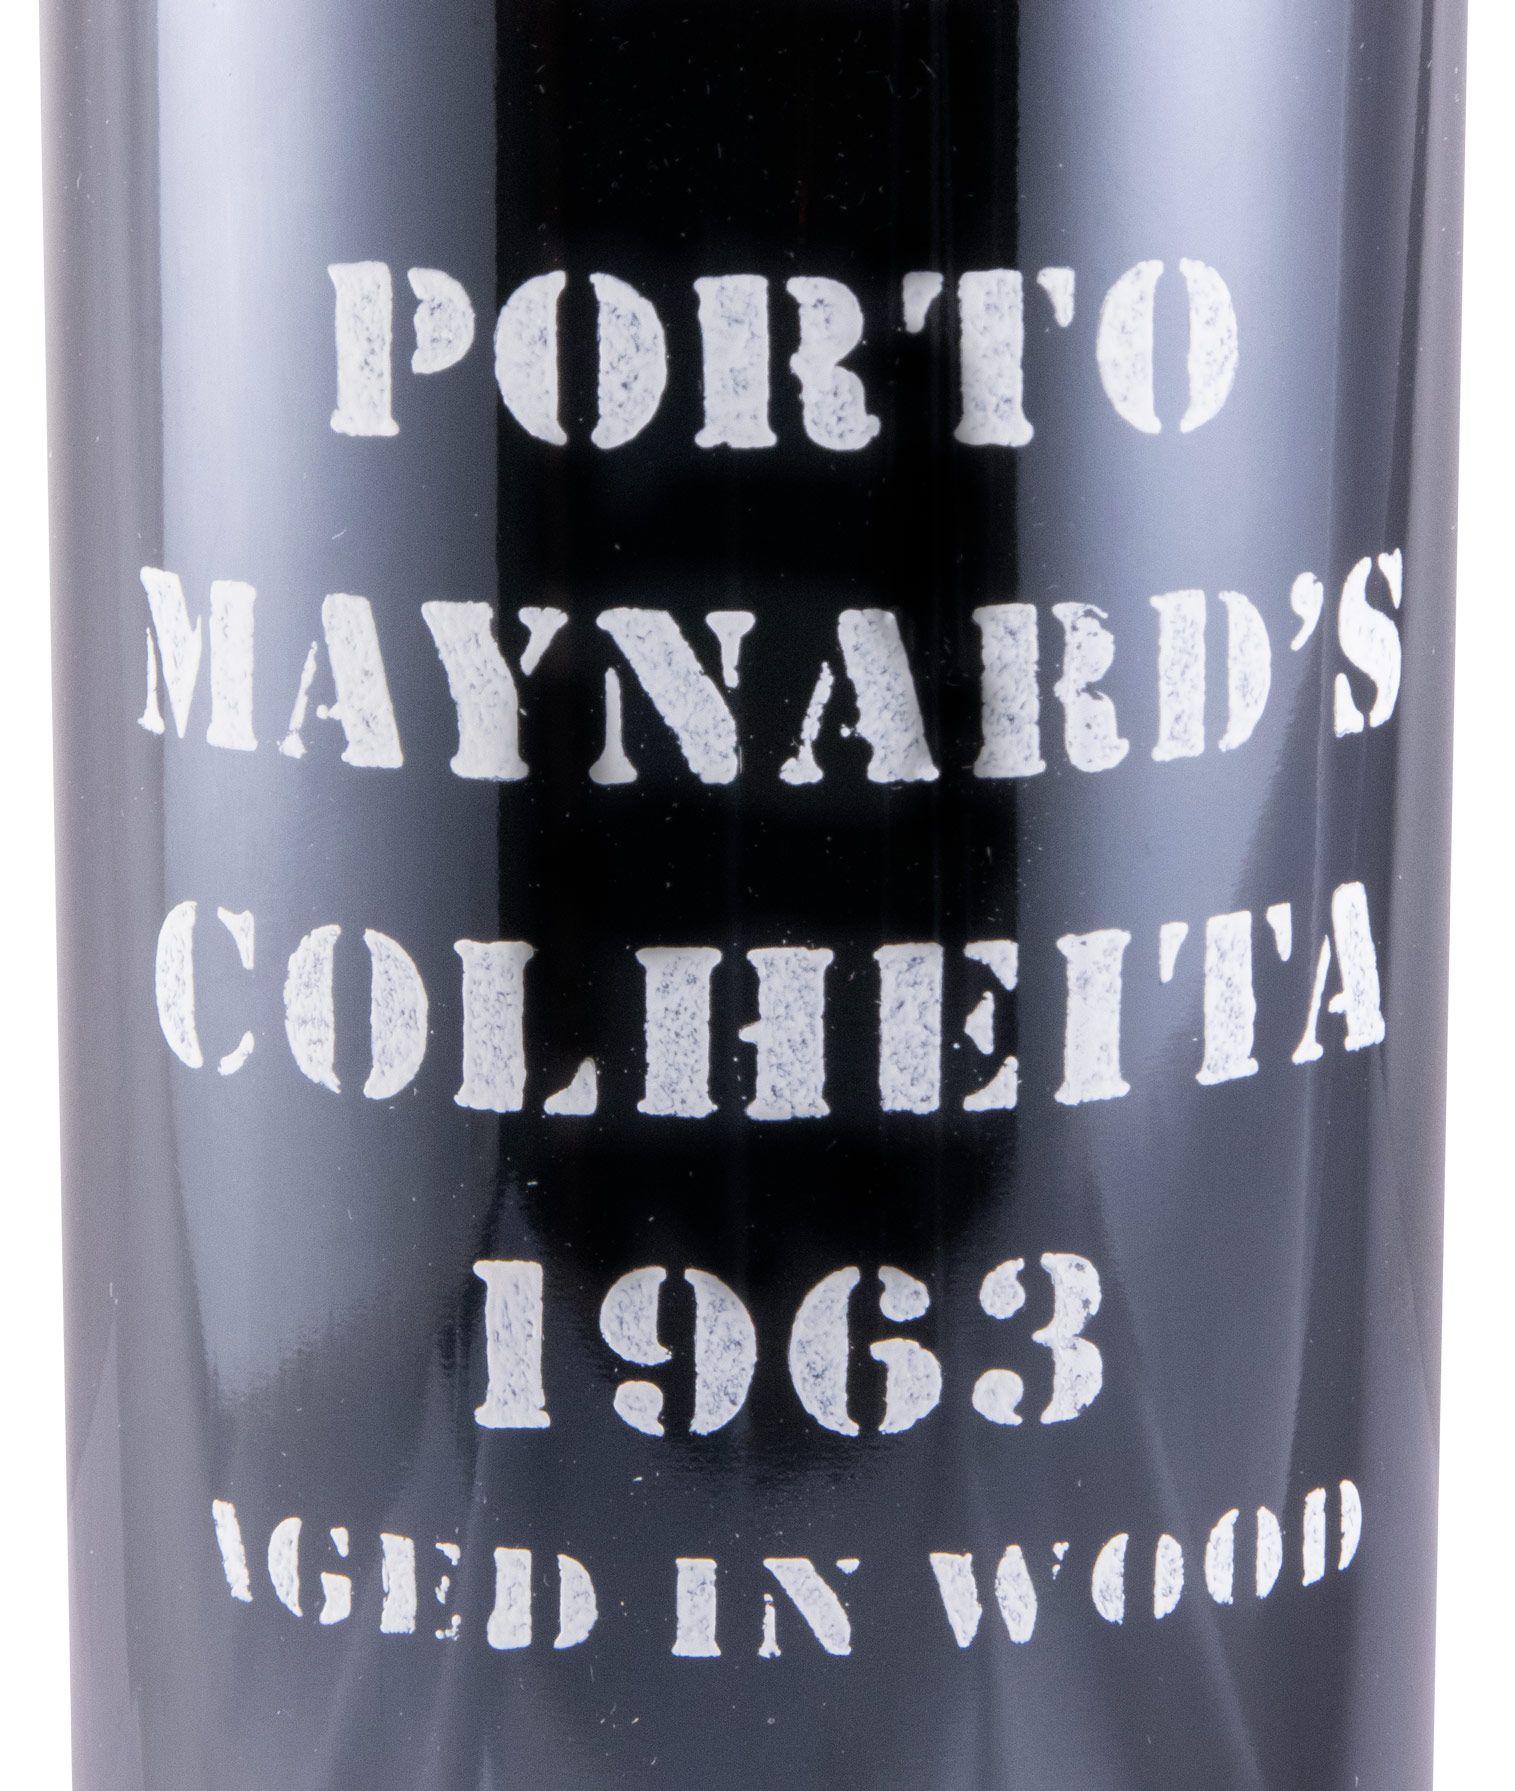 1963 Maynard's Colheita Port